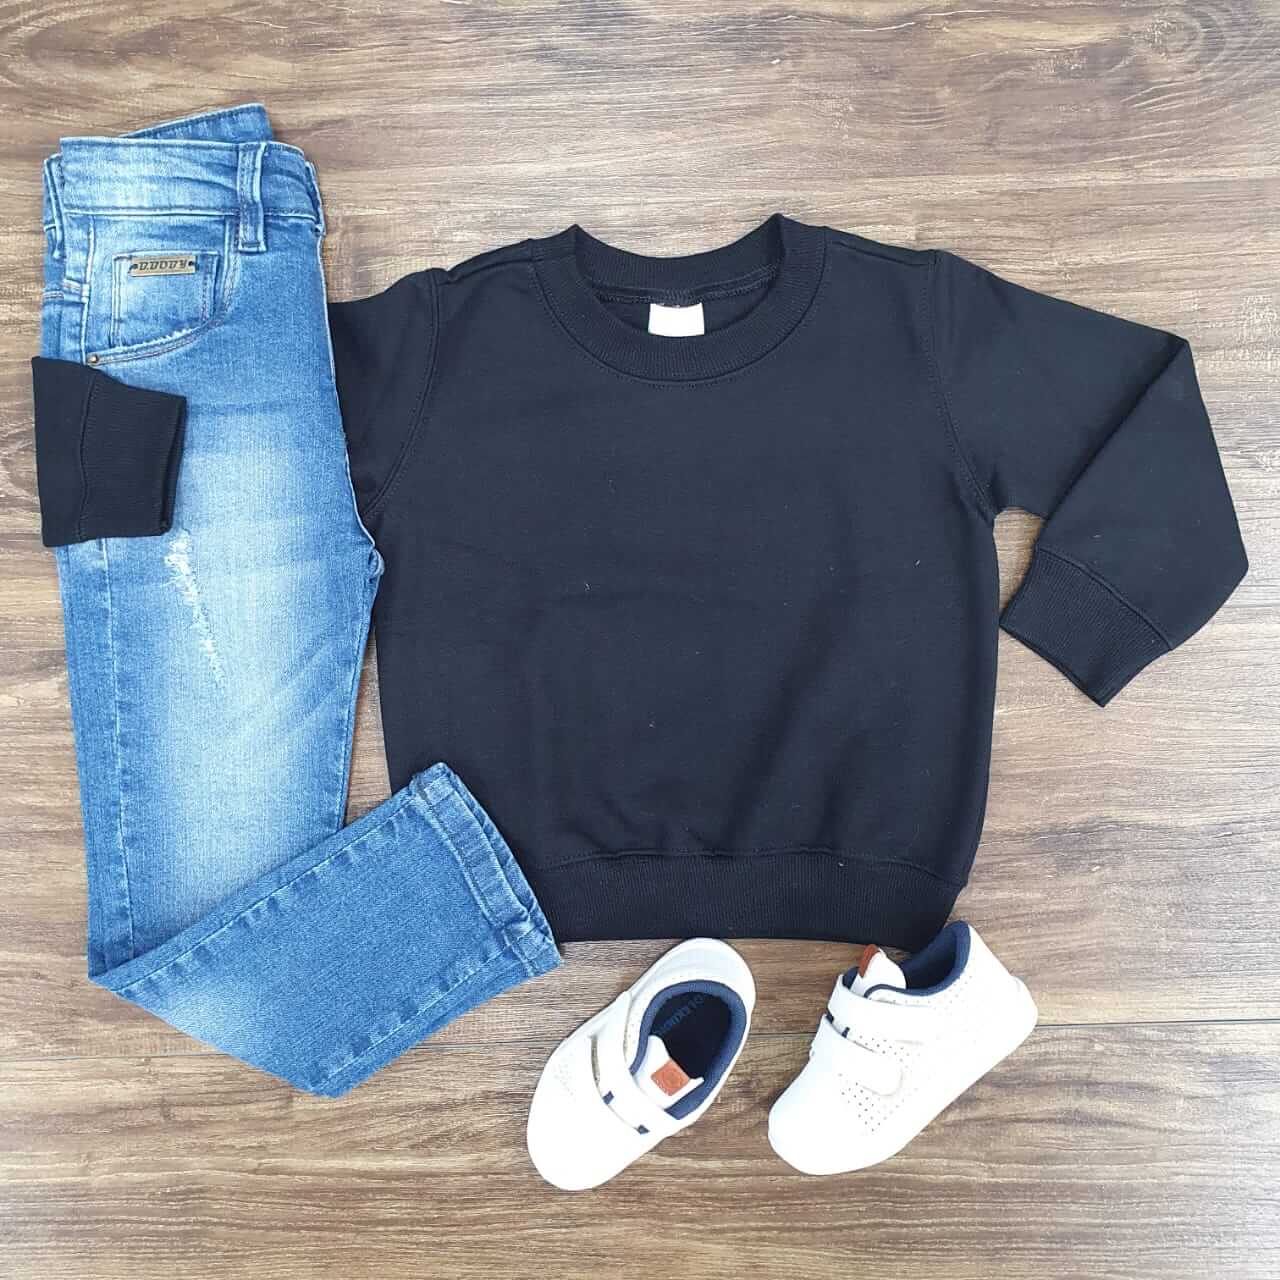 Calça jeans com Blusa de Moletom Preta